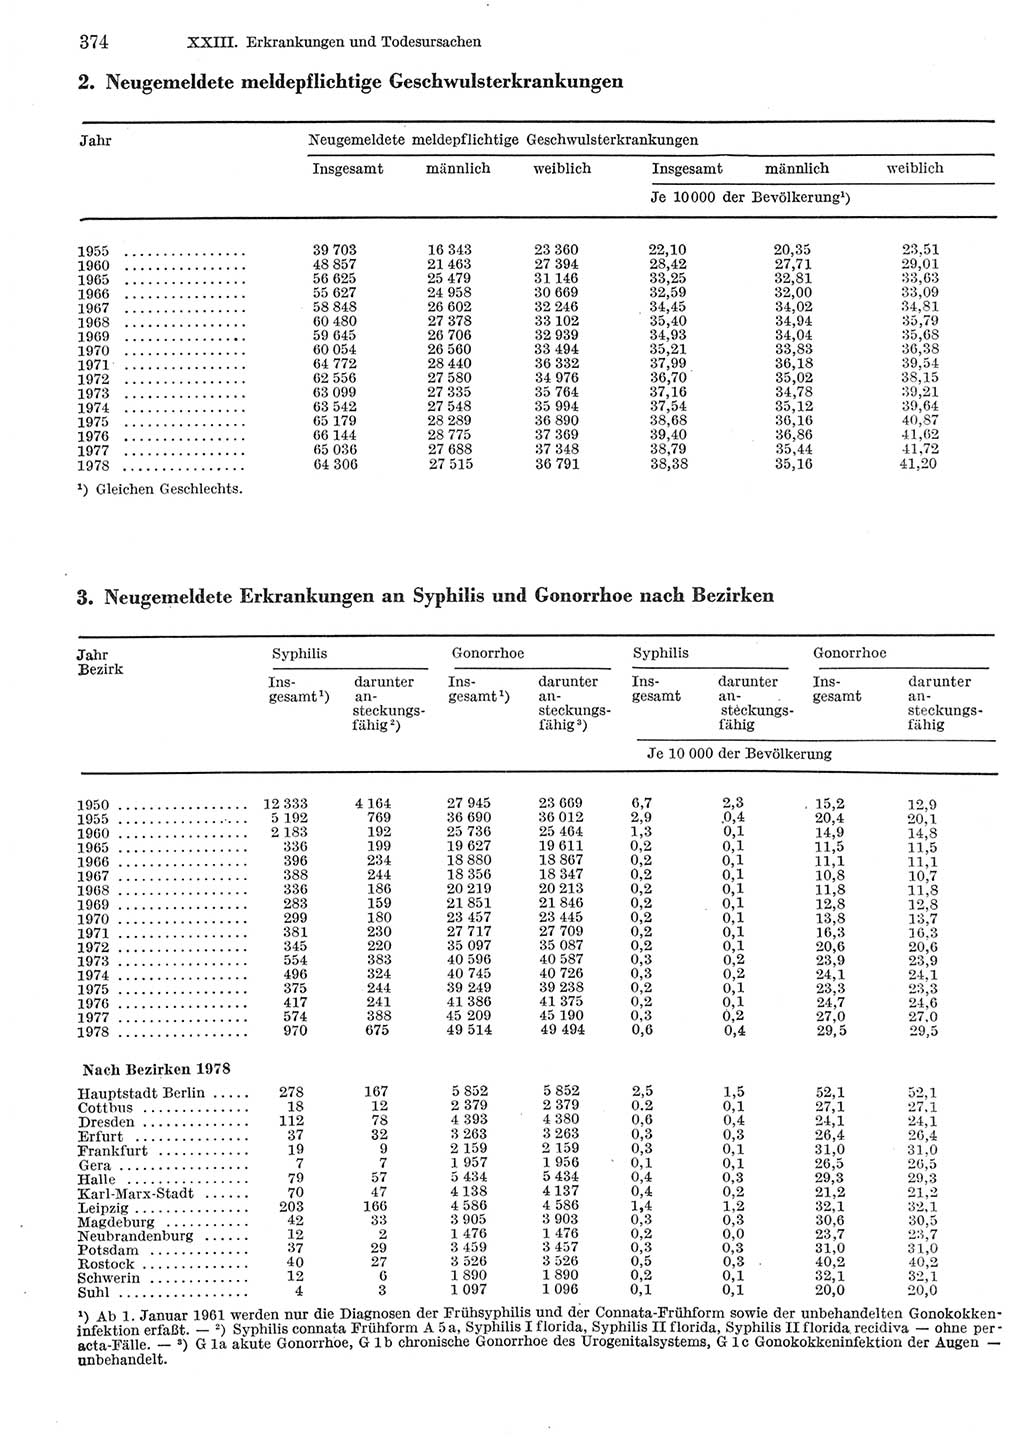 Statistisches Jahrbuch der Deutschen Demokratischen Republik (DDR) 1979, Seite 374 (Stat. Jb. DDR 1979, S. 374)